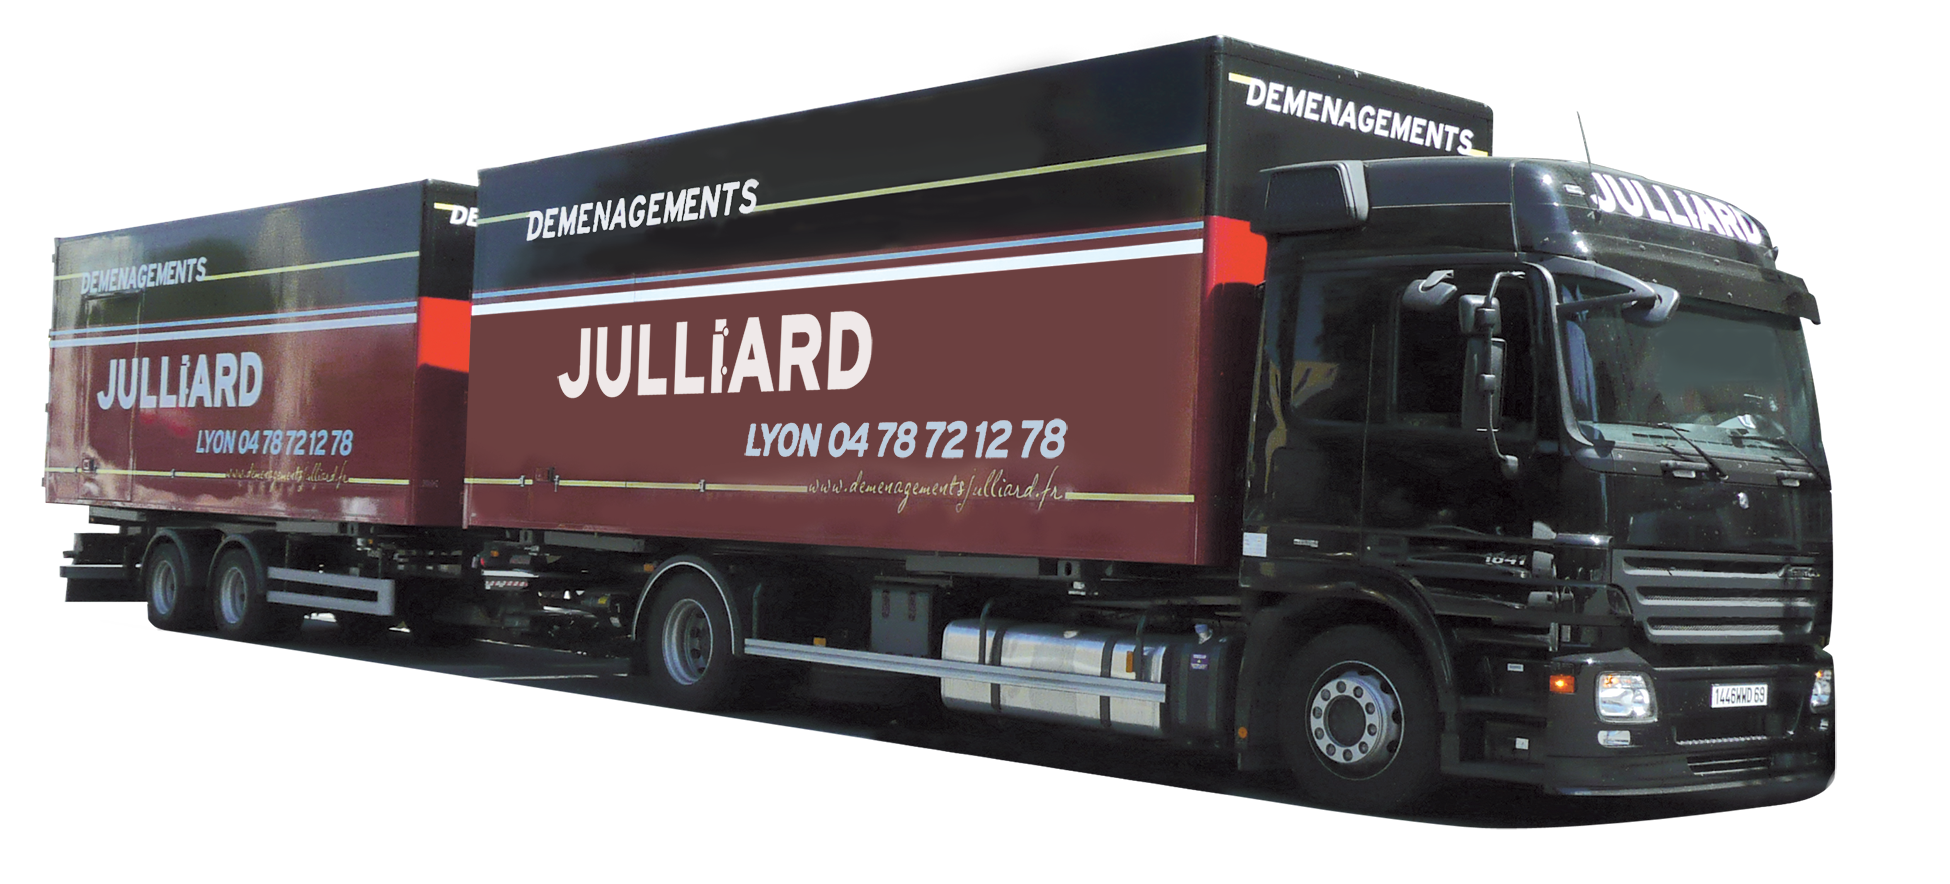 camion demenagement julliard